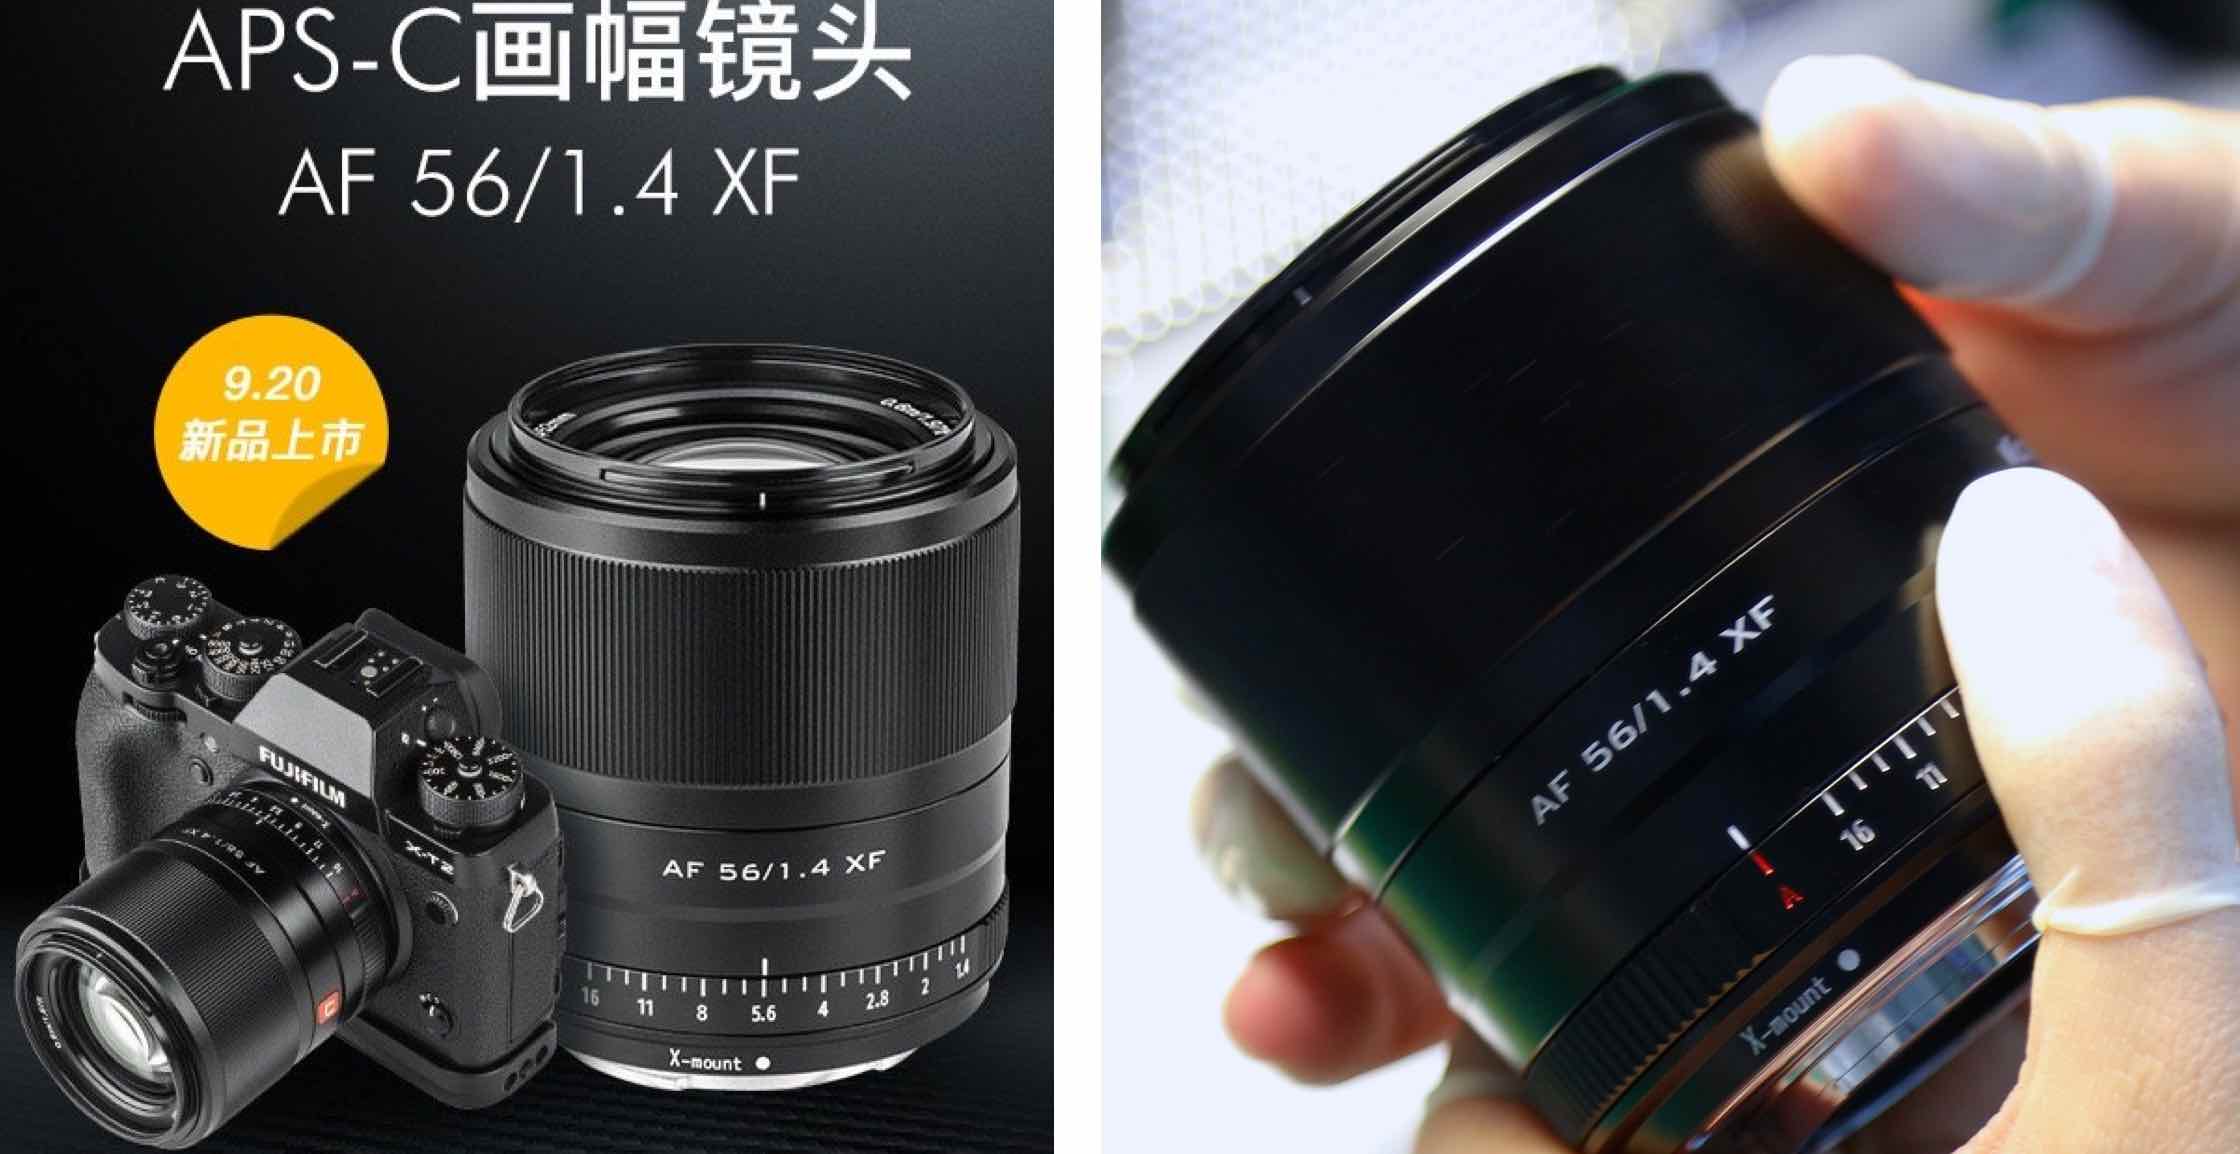 Ống kính Viltrox 56mm F1.4 XF sẽ ra mắt vào 20/9